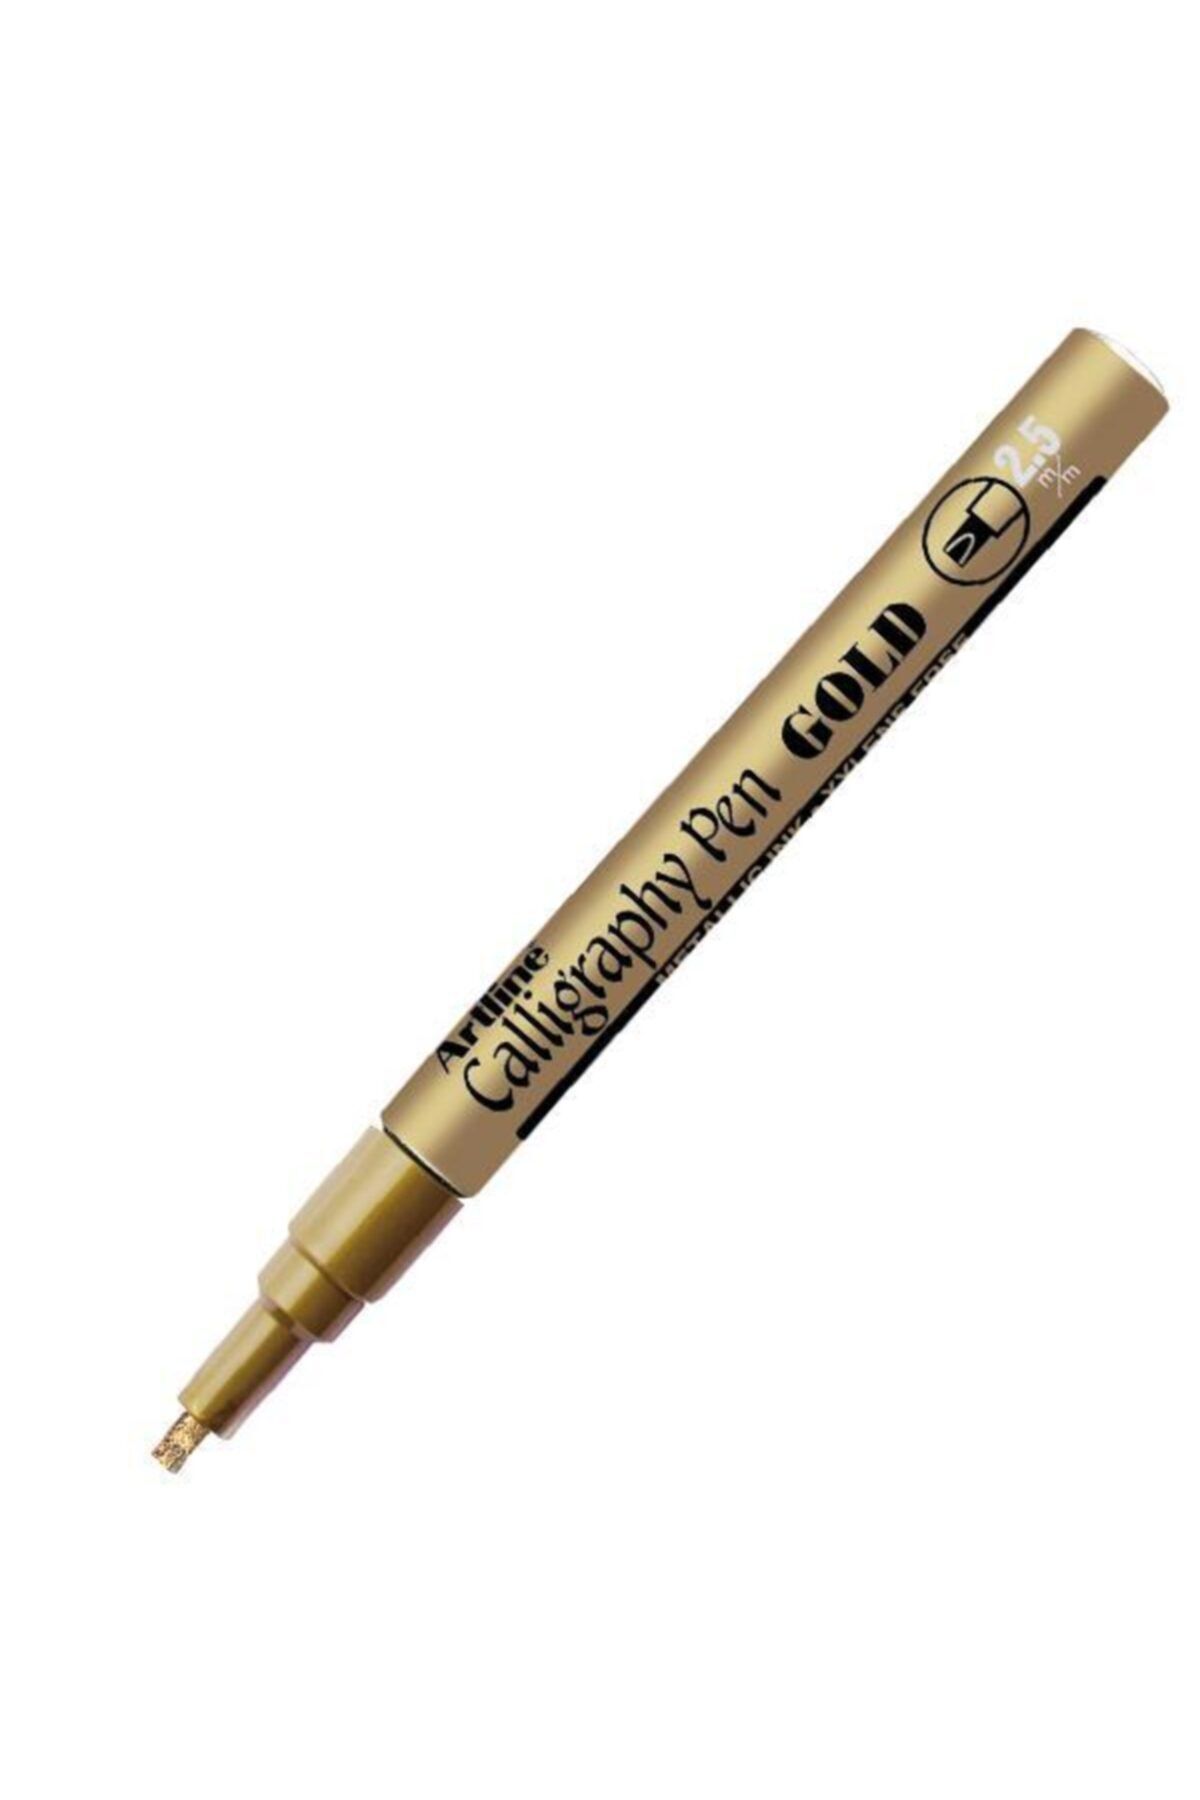 artline Metalik Kaligrafi Kalemi Altın 2.5mm Davetiye Kalemi.